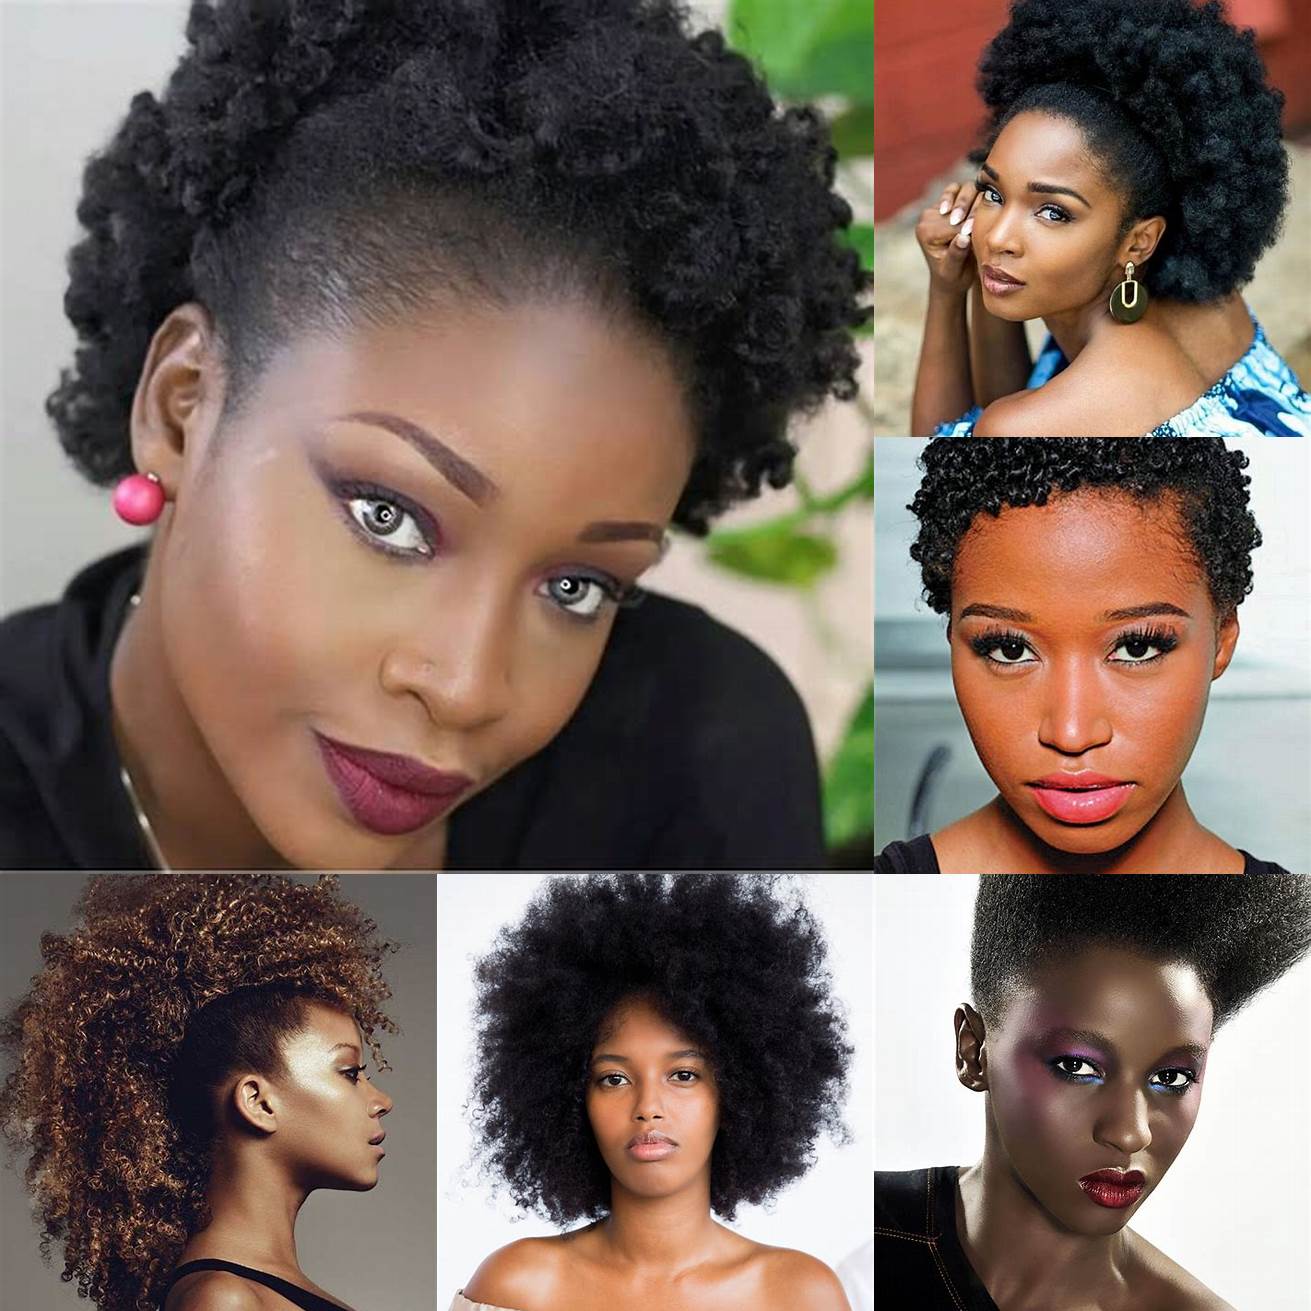 Afro Lafro est une coiffure emblématique des cheveux afro Elle consiste à laisser les cheveux pousser naturellement sans les lisser ni les défriser Cette coiffure convient aux femmes qui veulent affirmer leur identité et leur beauté naturelle